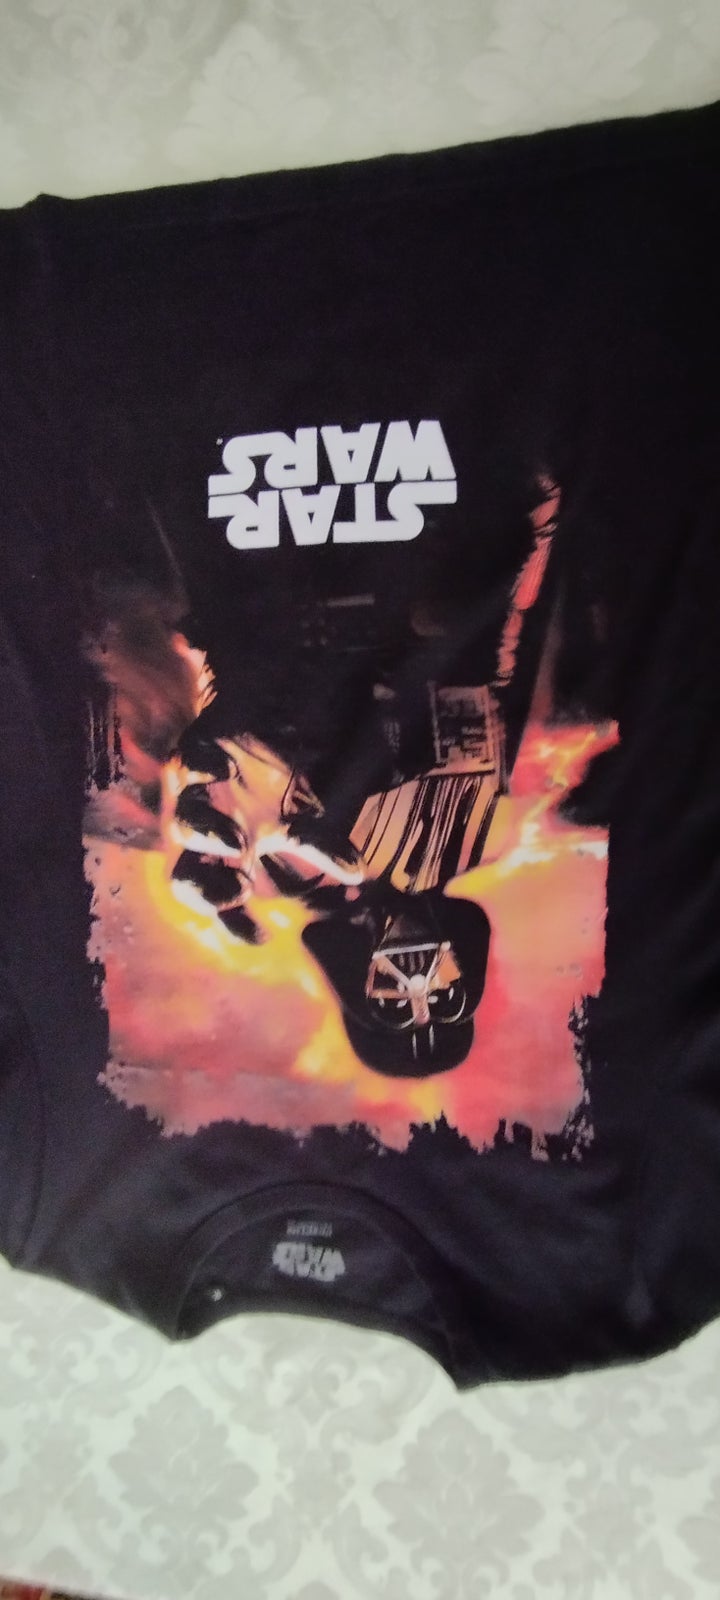 T-shirt, STAR WARS, str. M